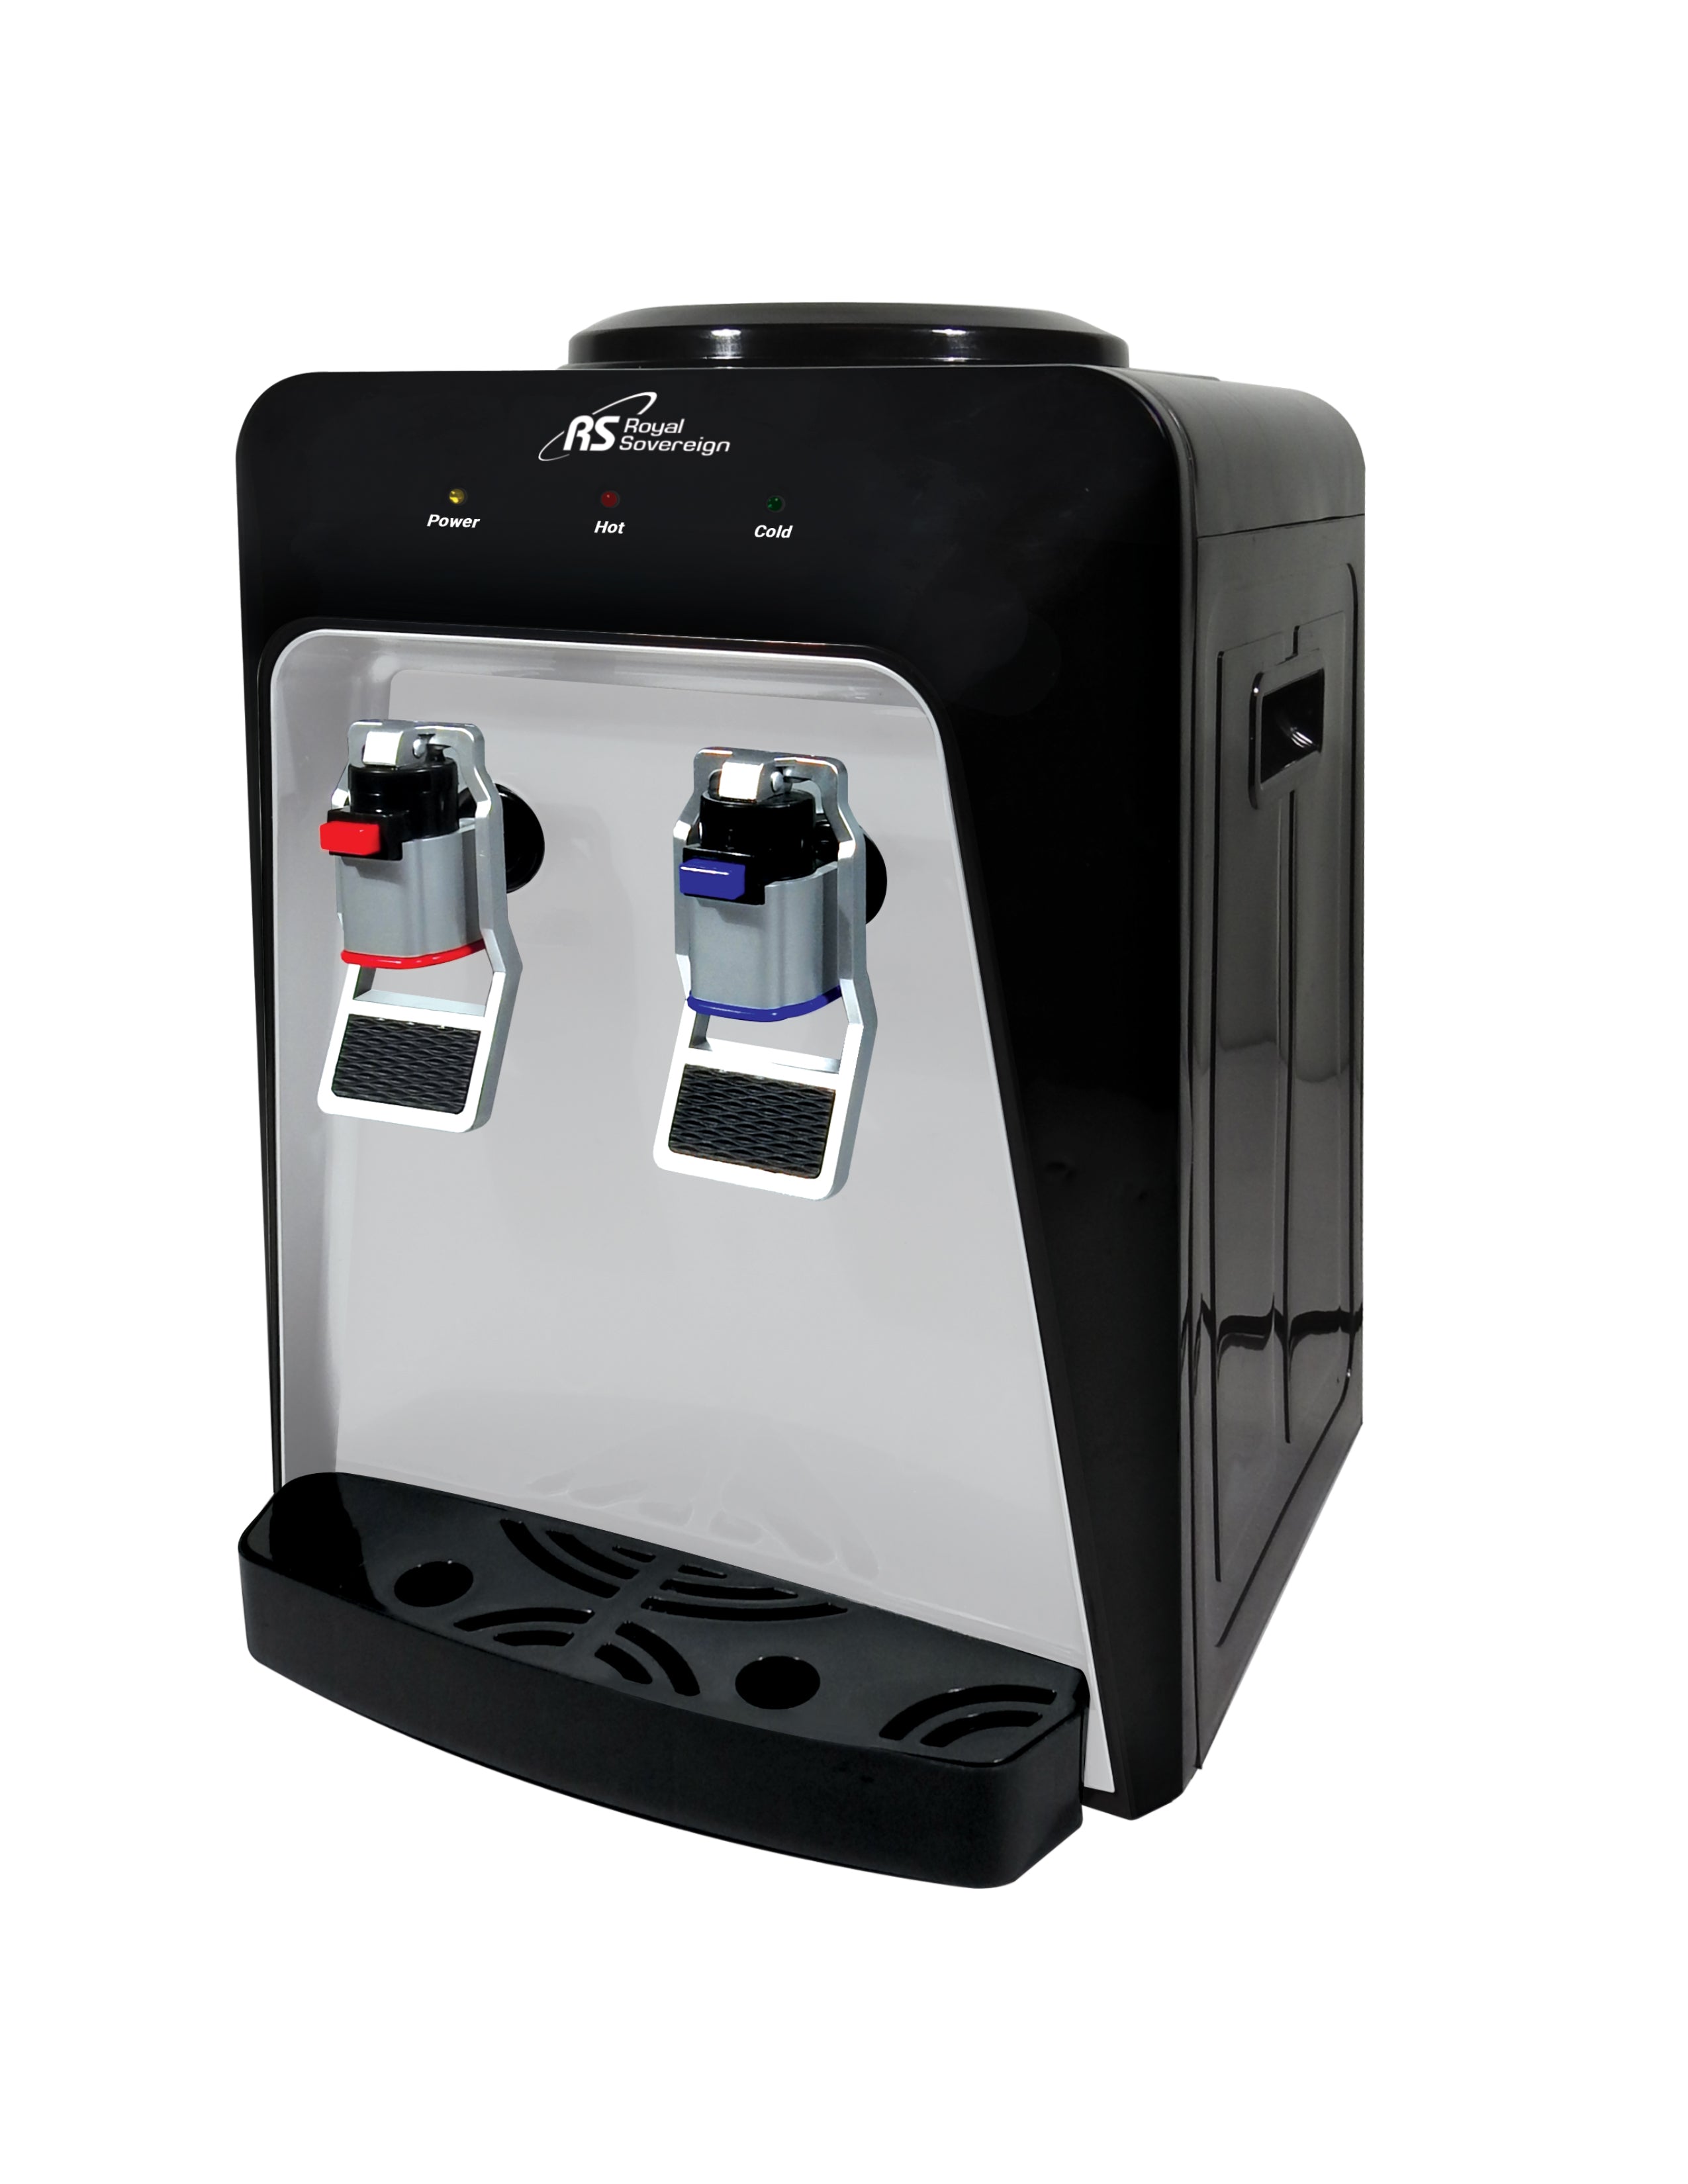 RWD-180B/ Countertop Water Dispenser